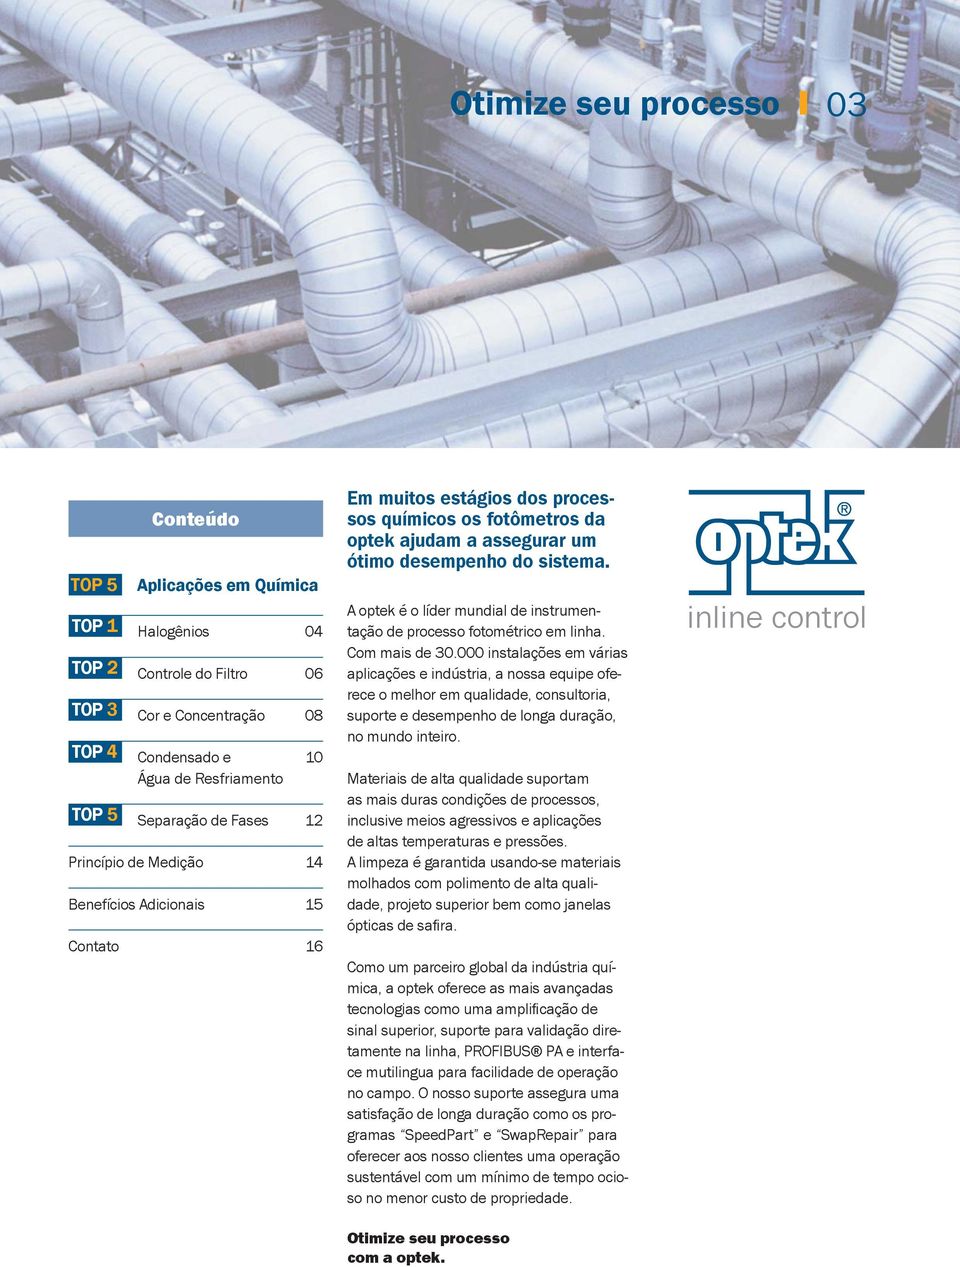 A optek é o líder mundial de instrumentação de processo fotométrico em linha. Com mais de 30.